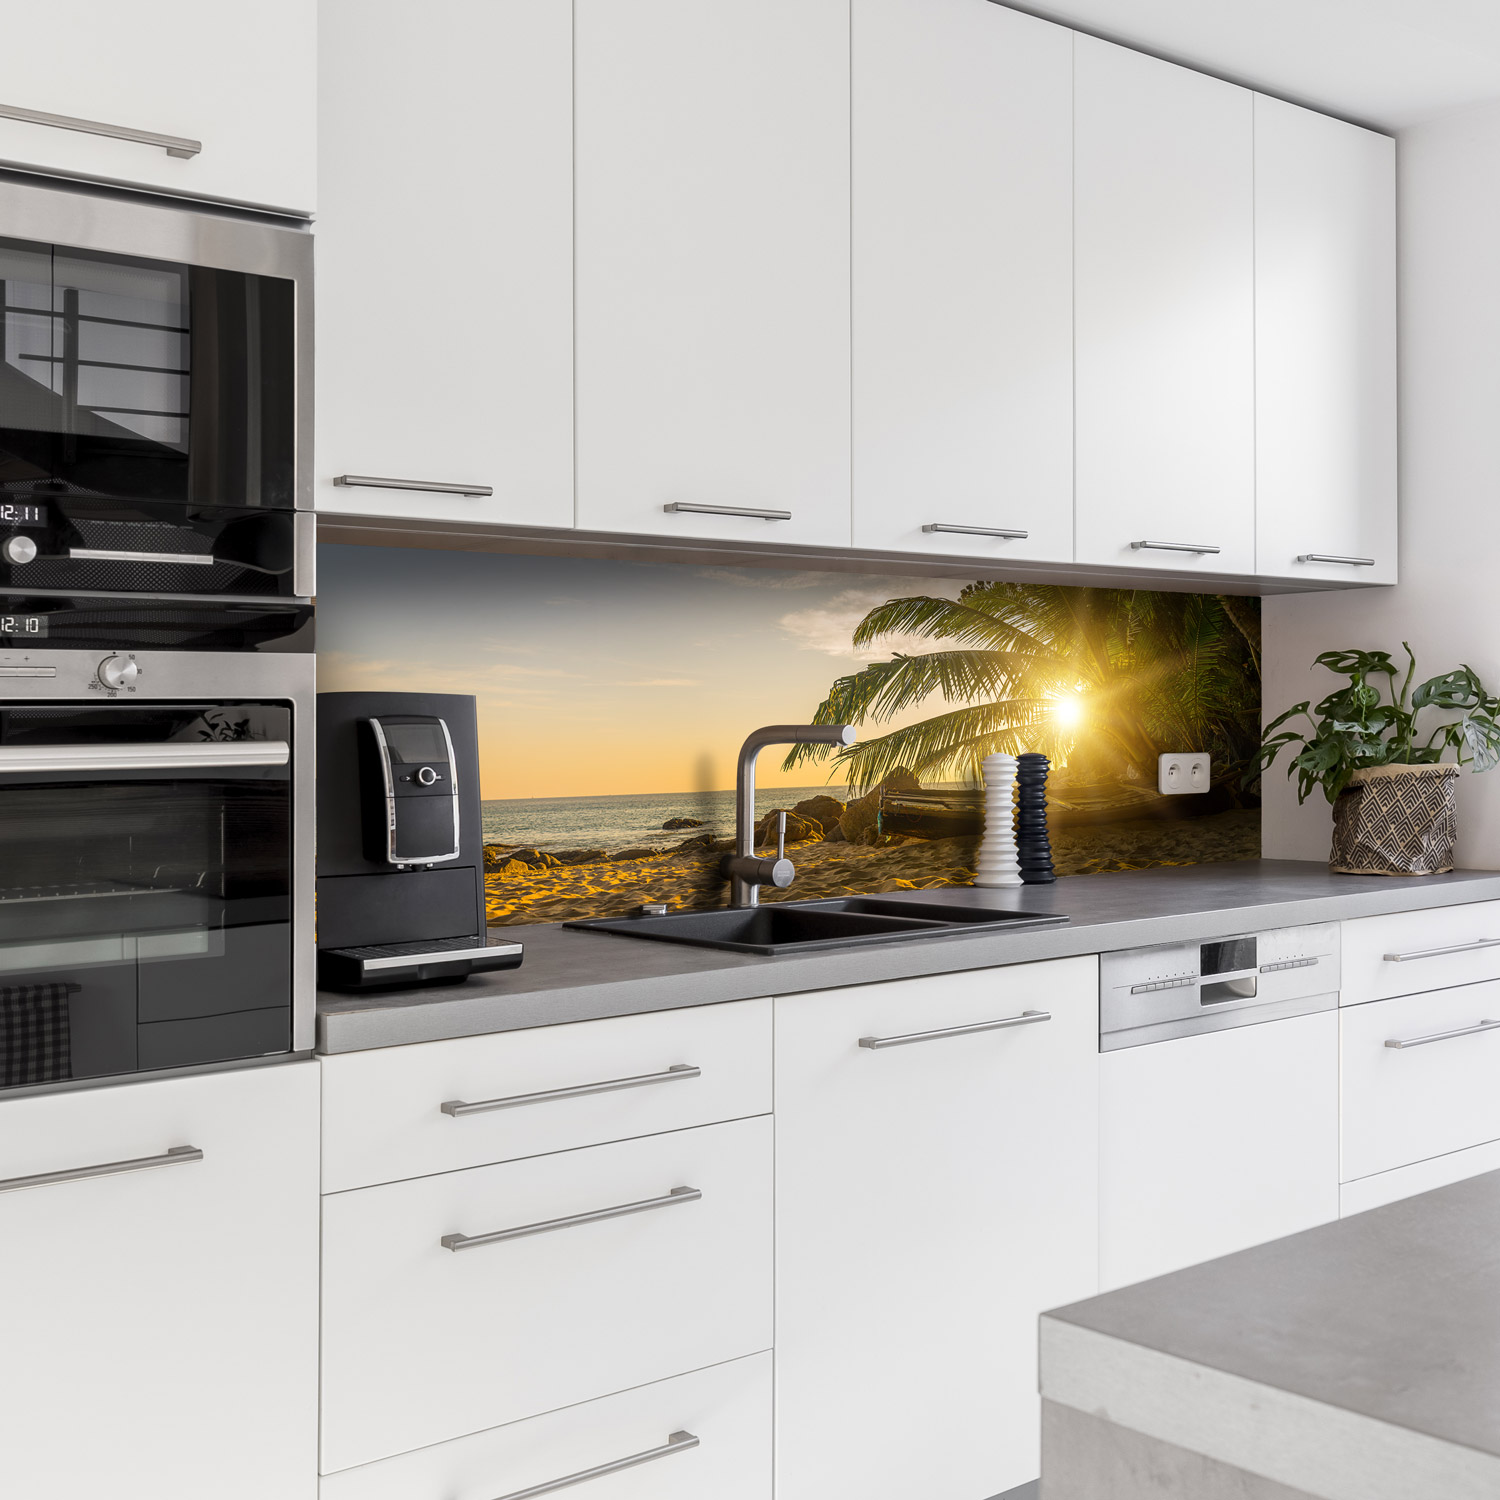 Küchenrückwand mit Strand V1 Motiv als Fliesenersatz und Spritzschutz